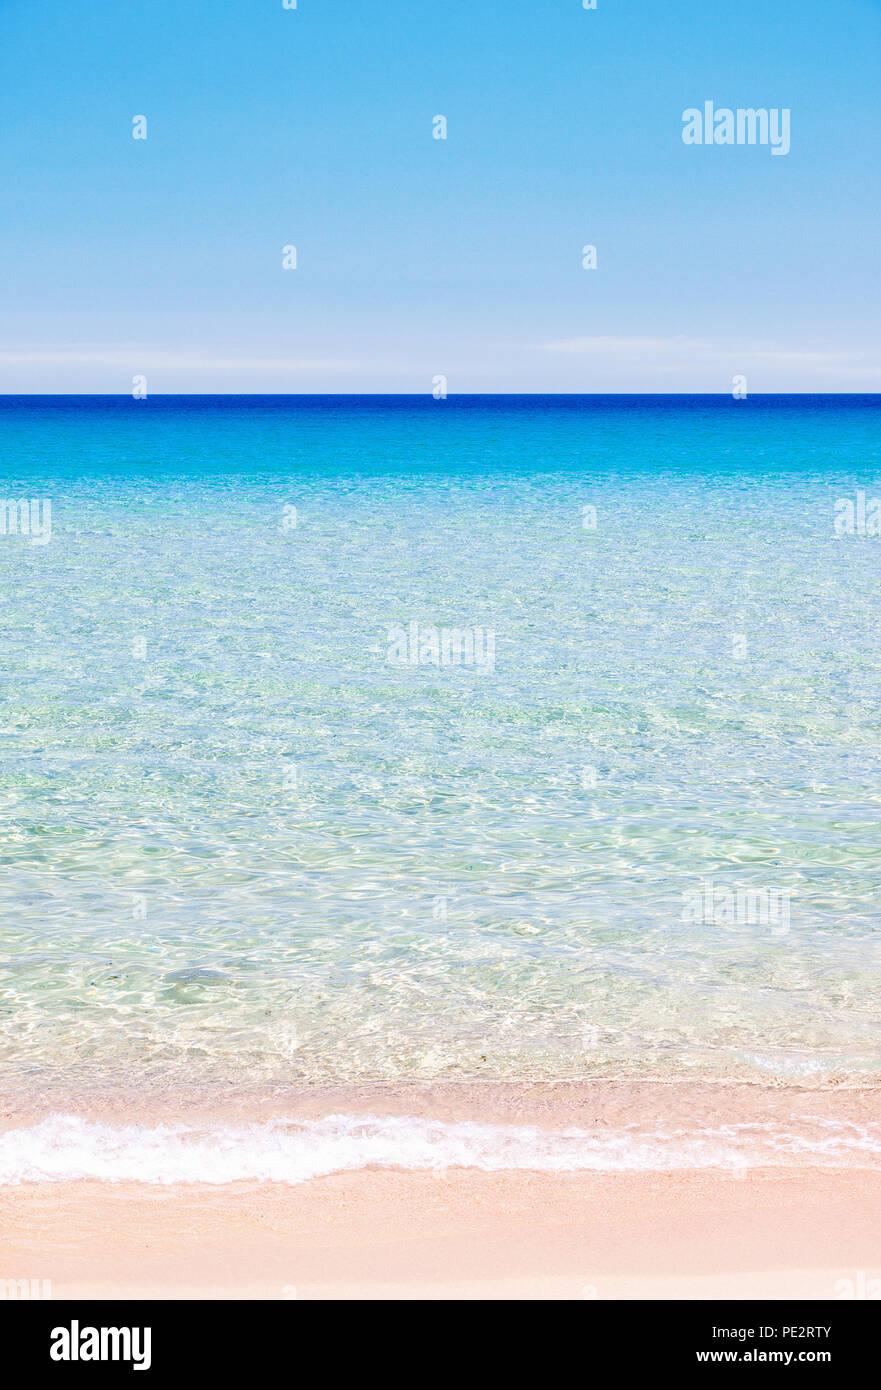 El mar en calma fondo con capas multicolores de la arena de la playa, el mar y el cielo, orientación vertical Foto de stock